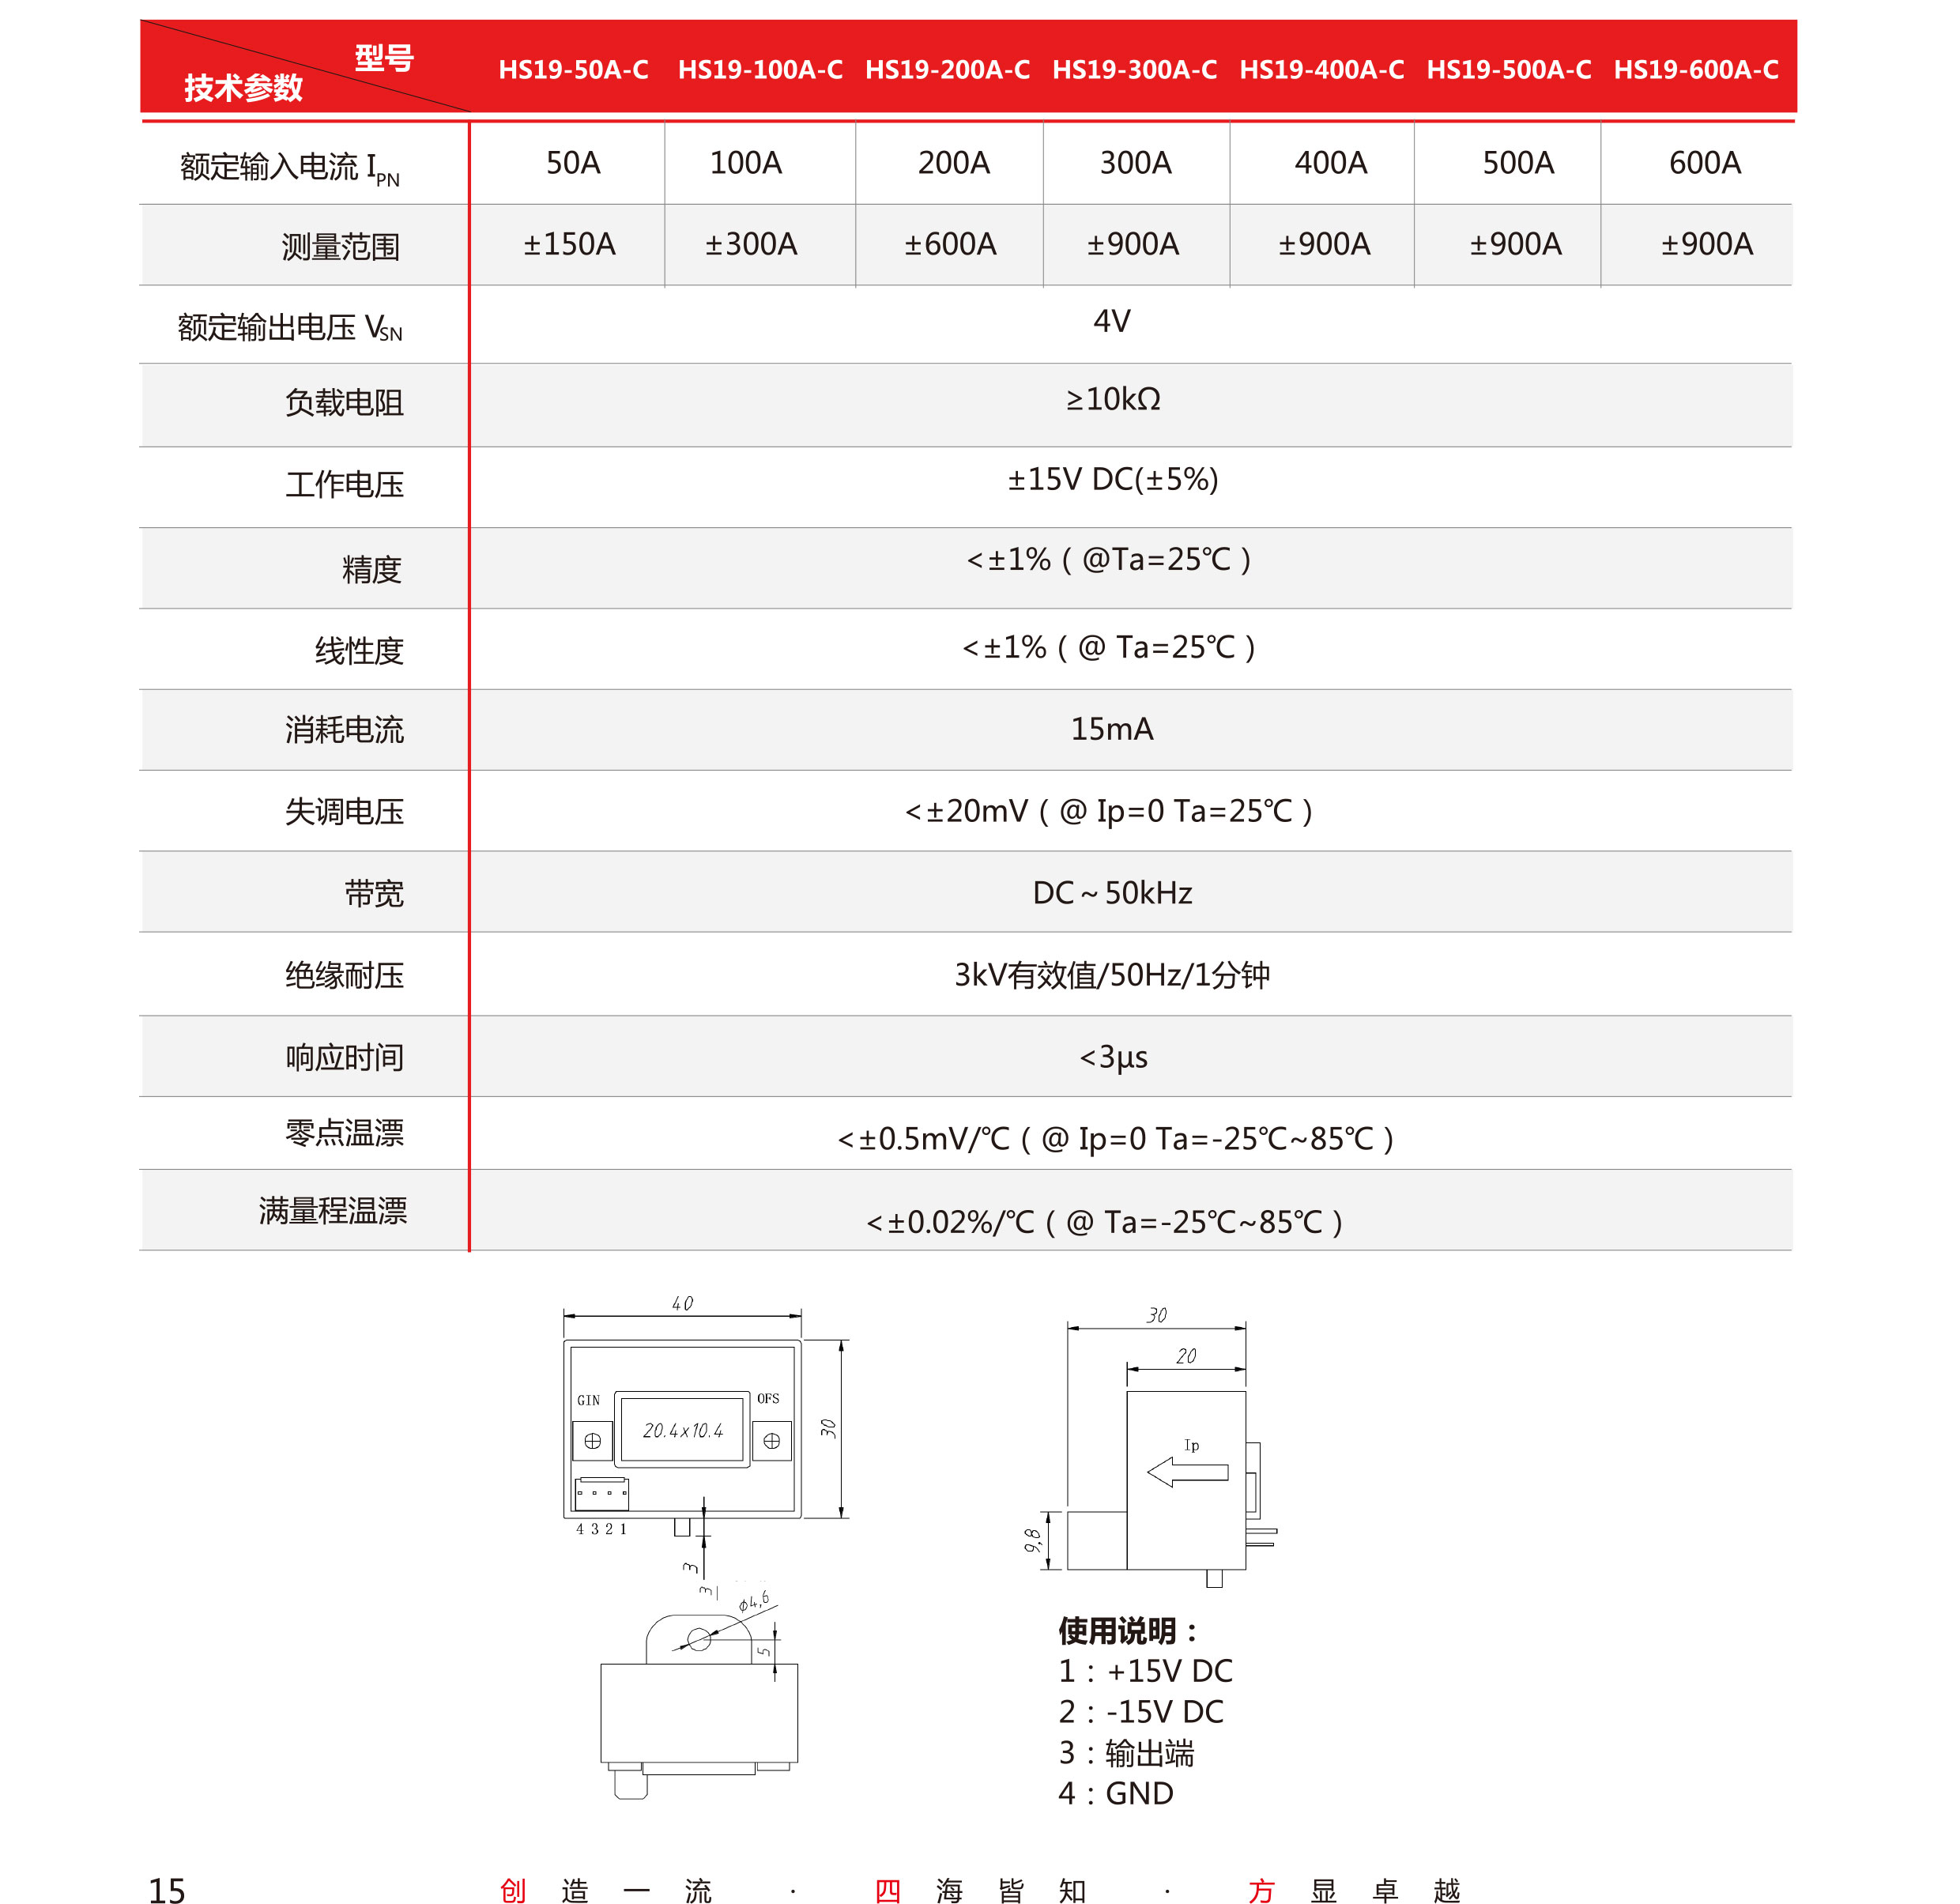 5传感器-V5-2019-北京-单页-16.jpg